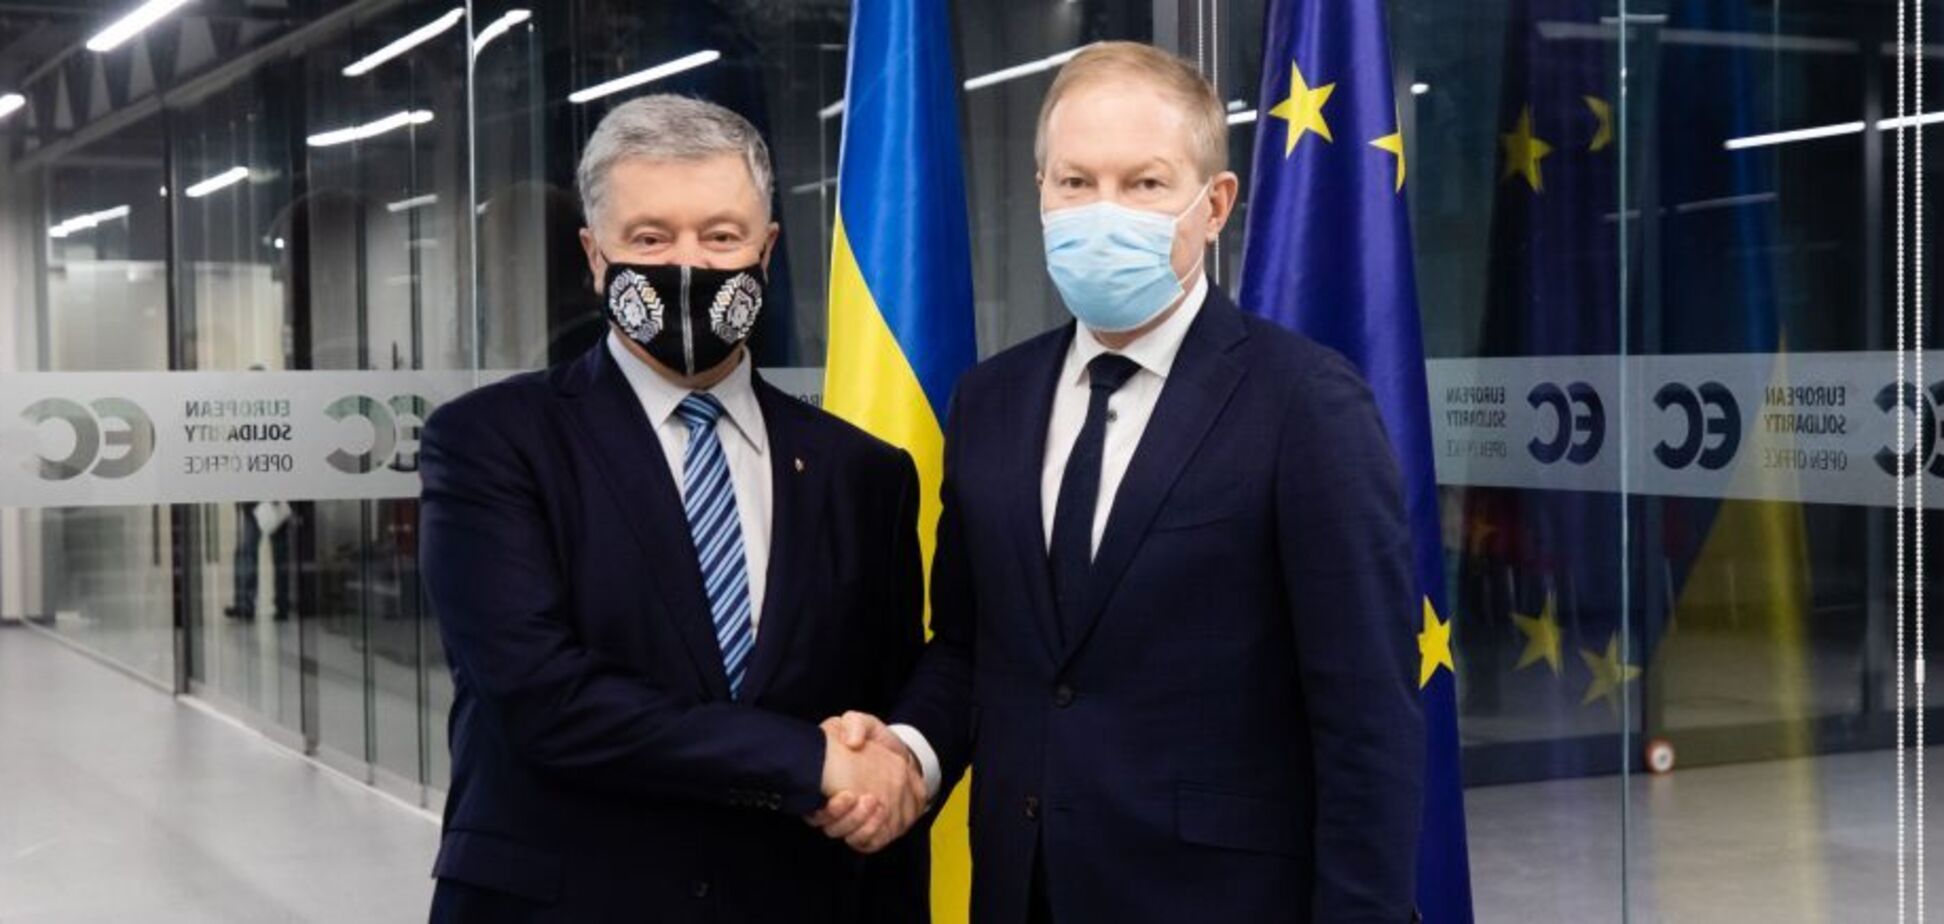 Порошенко обсудил с председателем комитета по иностранным делам Парламента Эстонии ситуацию с безопасностью в Украине